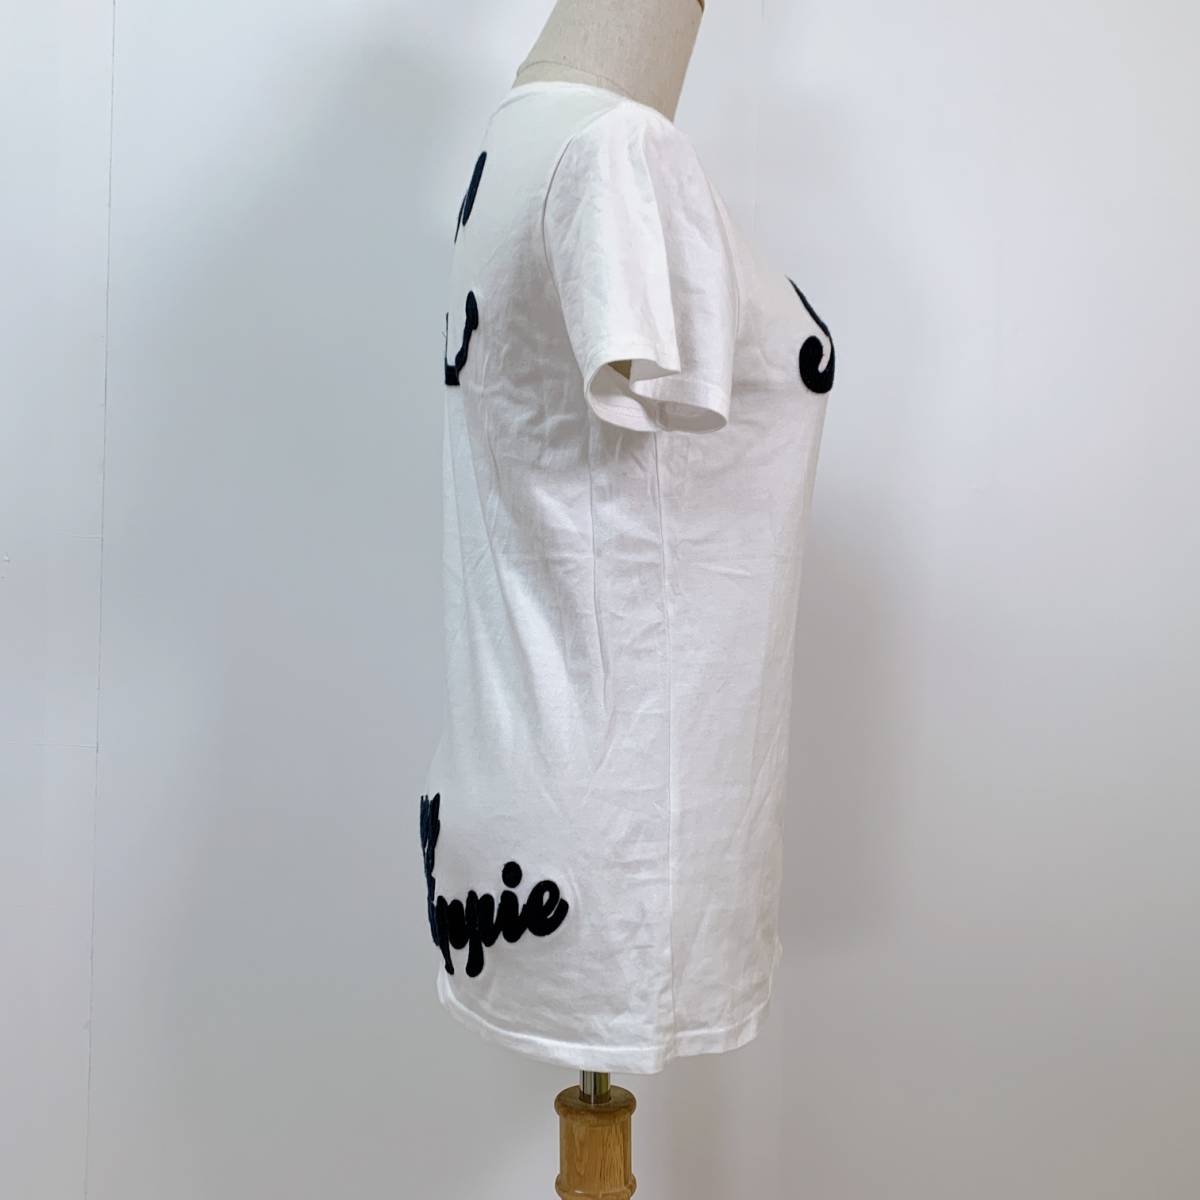 S1841 RUSTY レディース Tシャツ 半袖 キュート M ビッグロゴ 綿100% 万能 人気 シンプルデイリーカジュアル_画像2